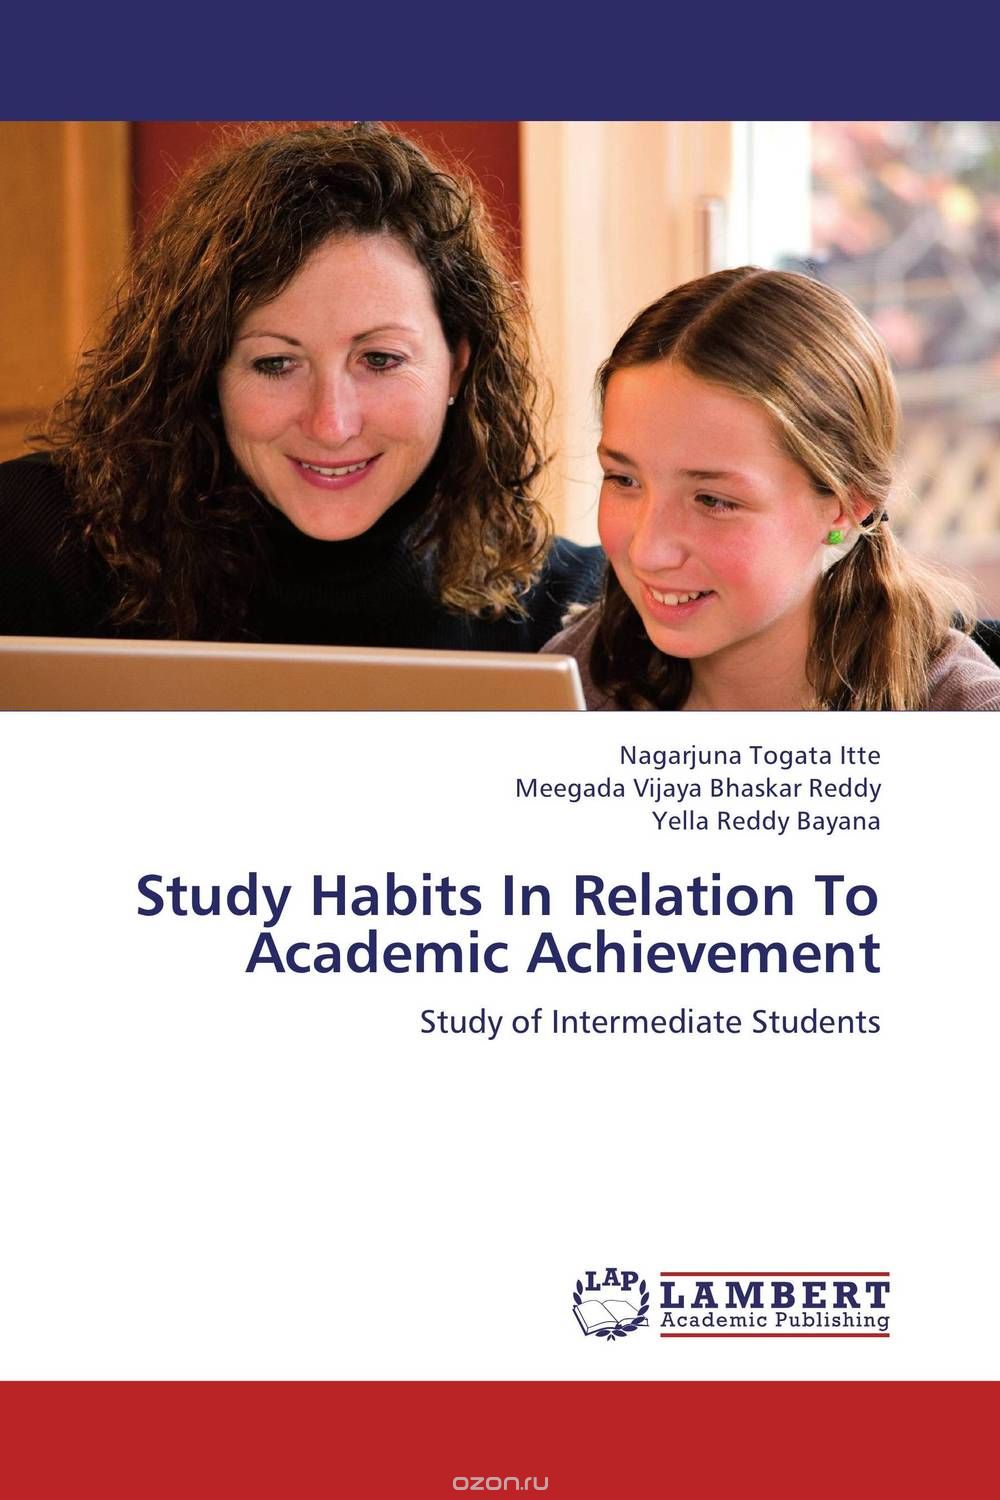 Скачать книгу "Study Habits In Relation To Academic Achievement"